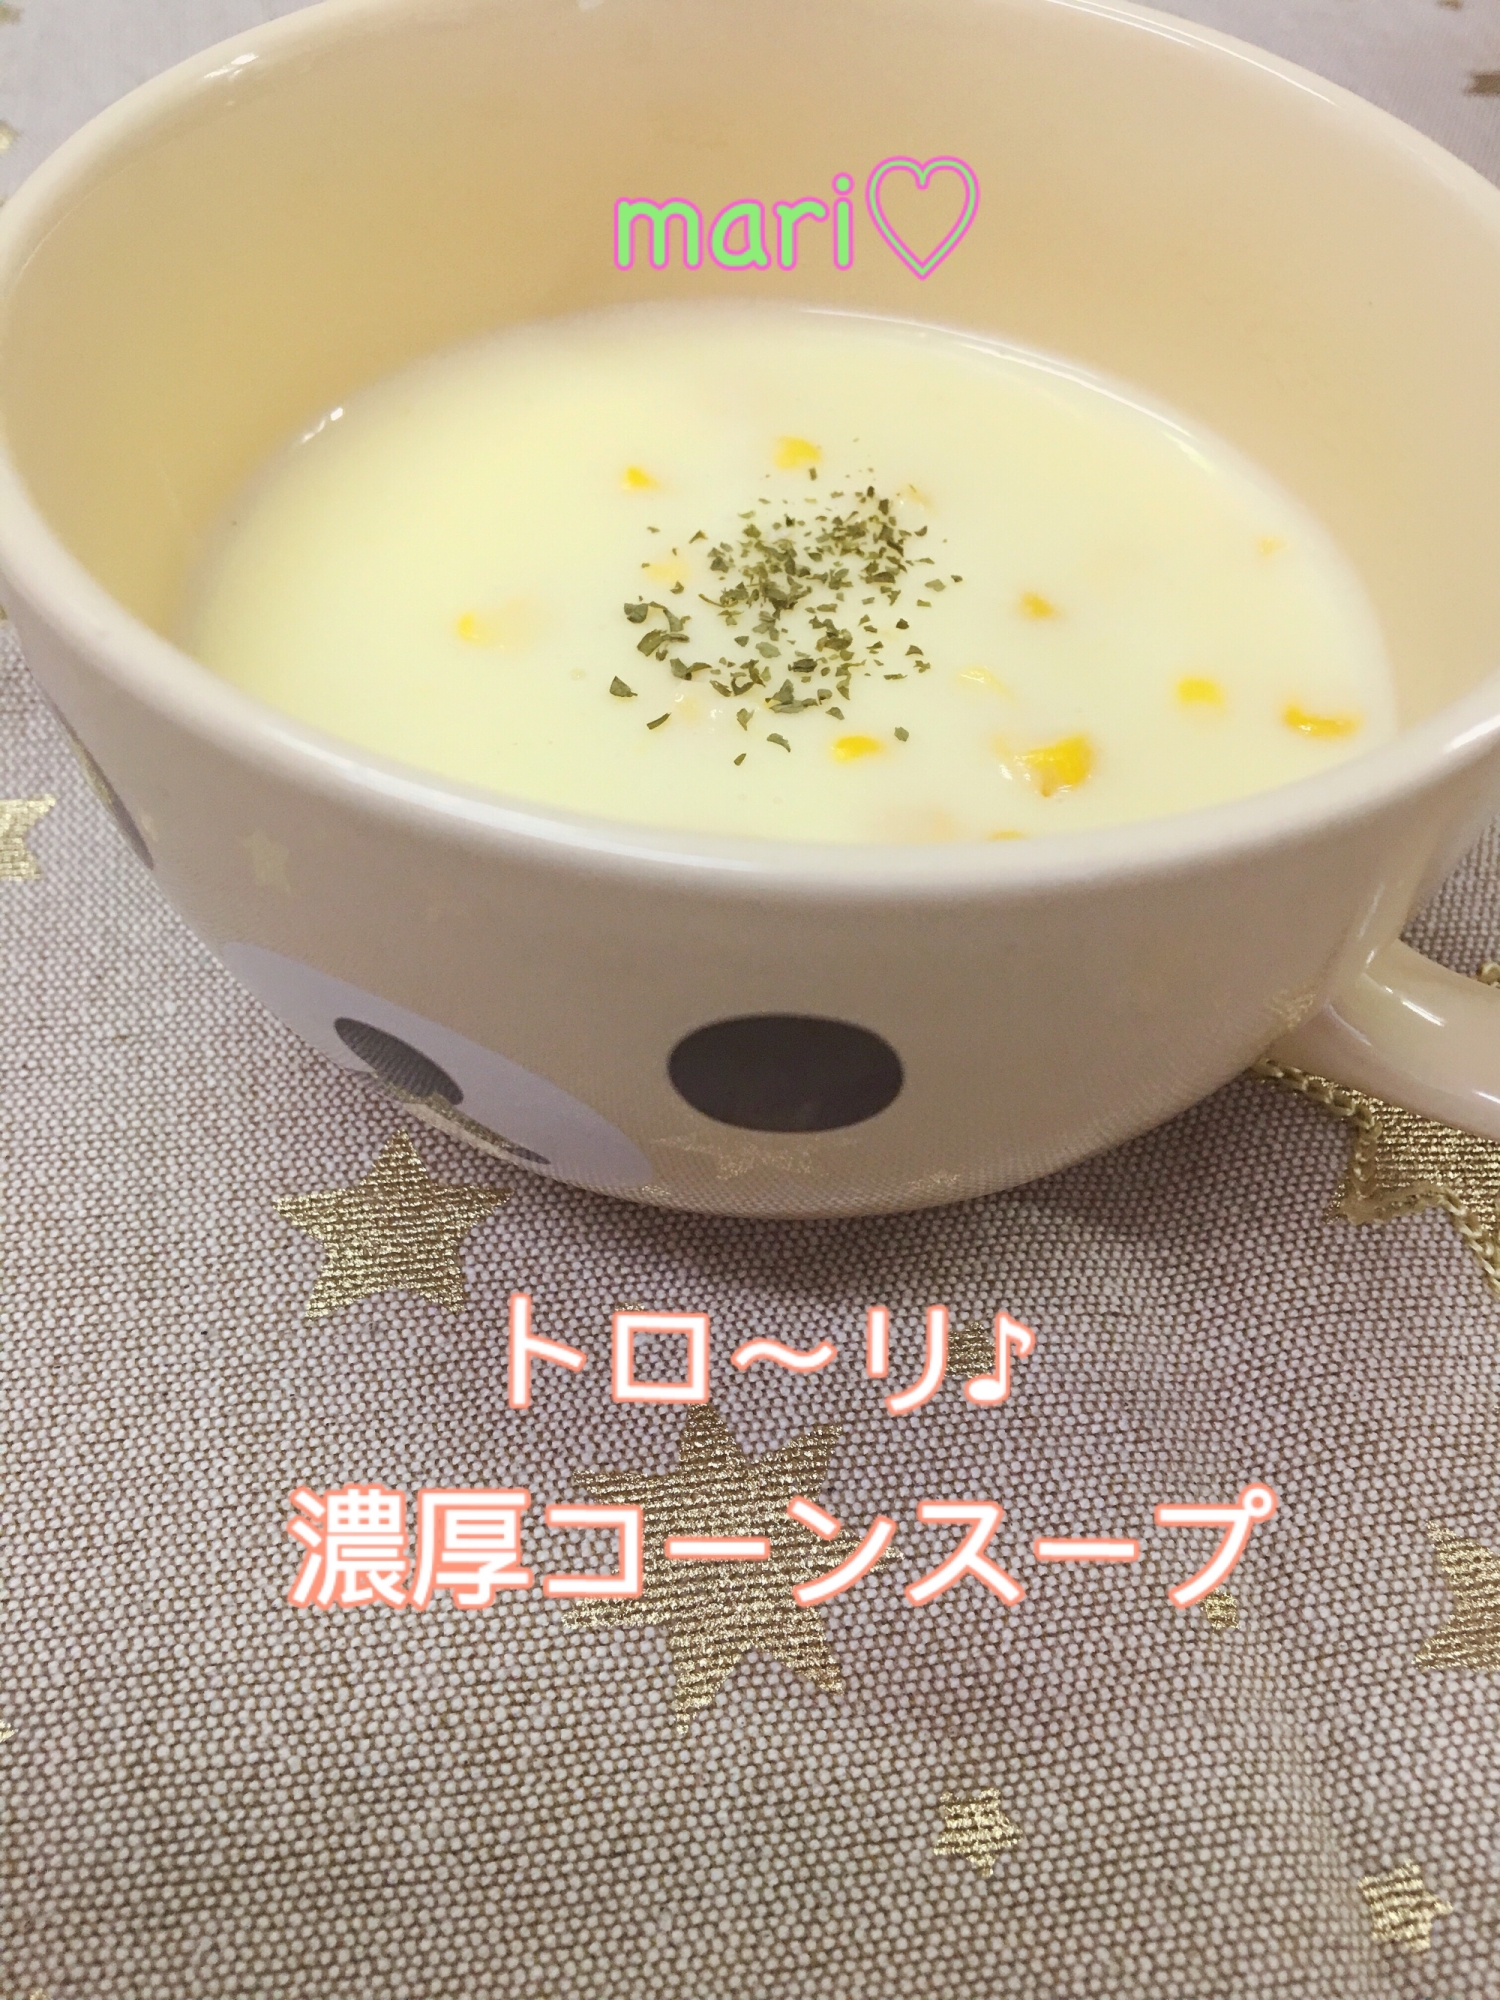 粉末コーンスープで簡単 とろ り濃厚コーンスープ レシピ 作り方 By Mari 楽天レシピ